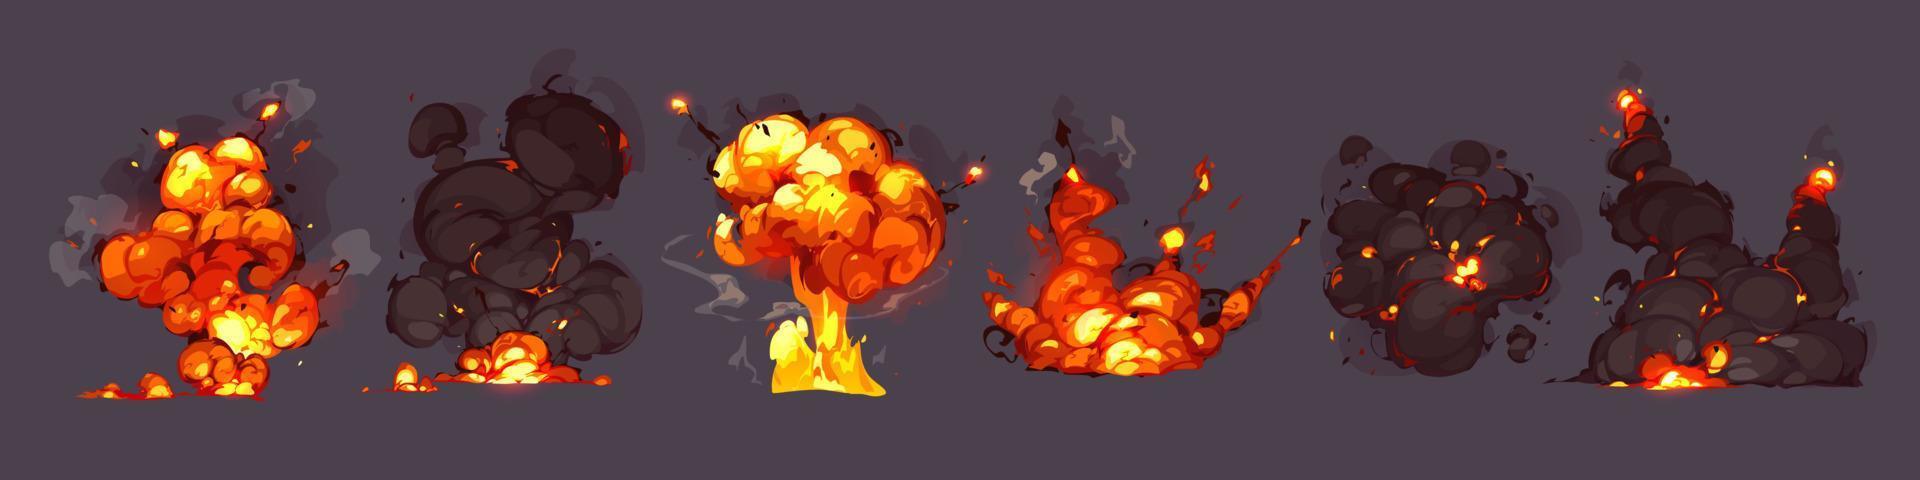 explosiones de bombas, explosiones con fuego y nubes de humo vector